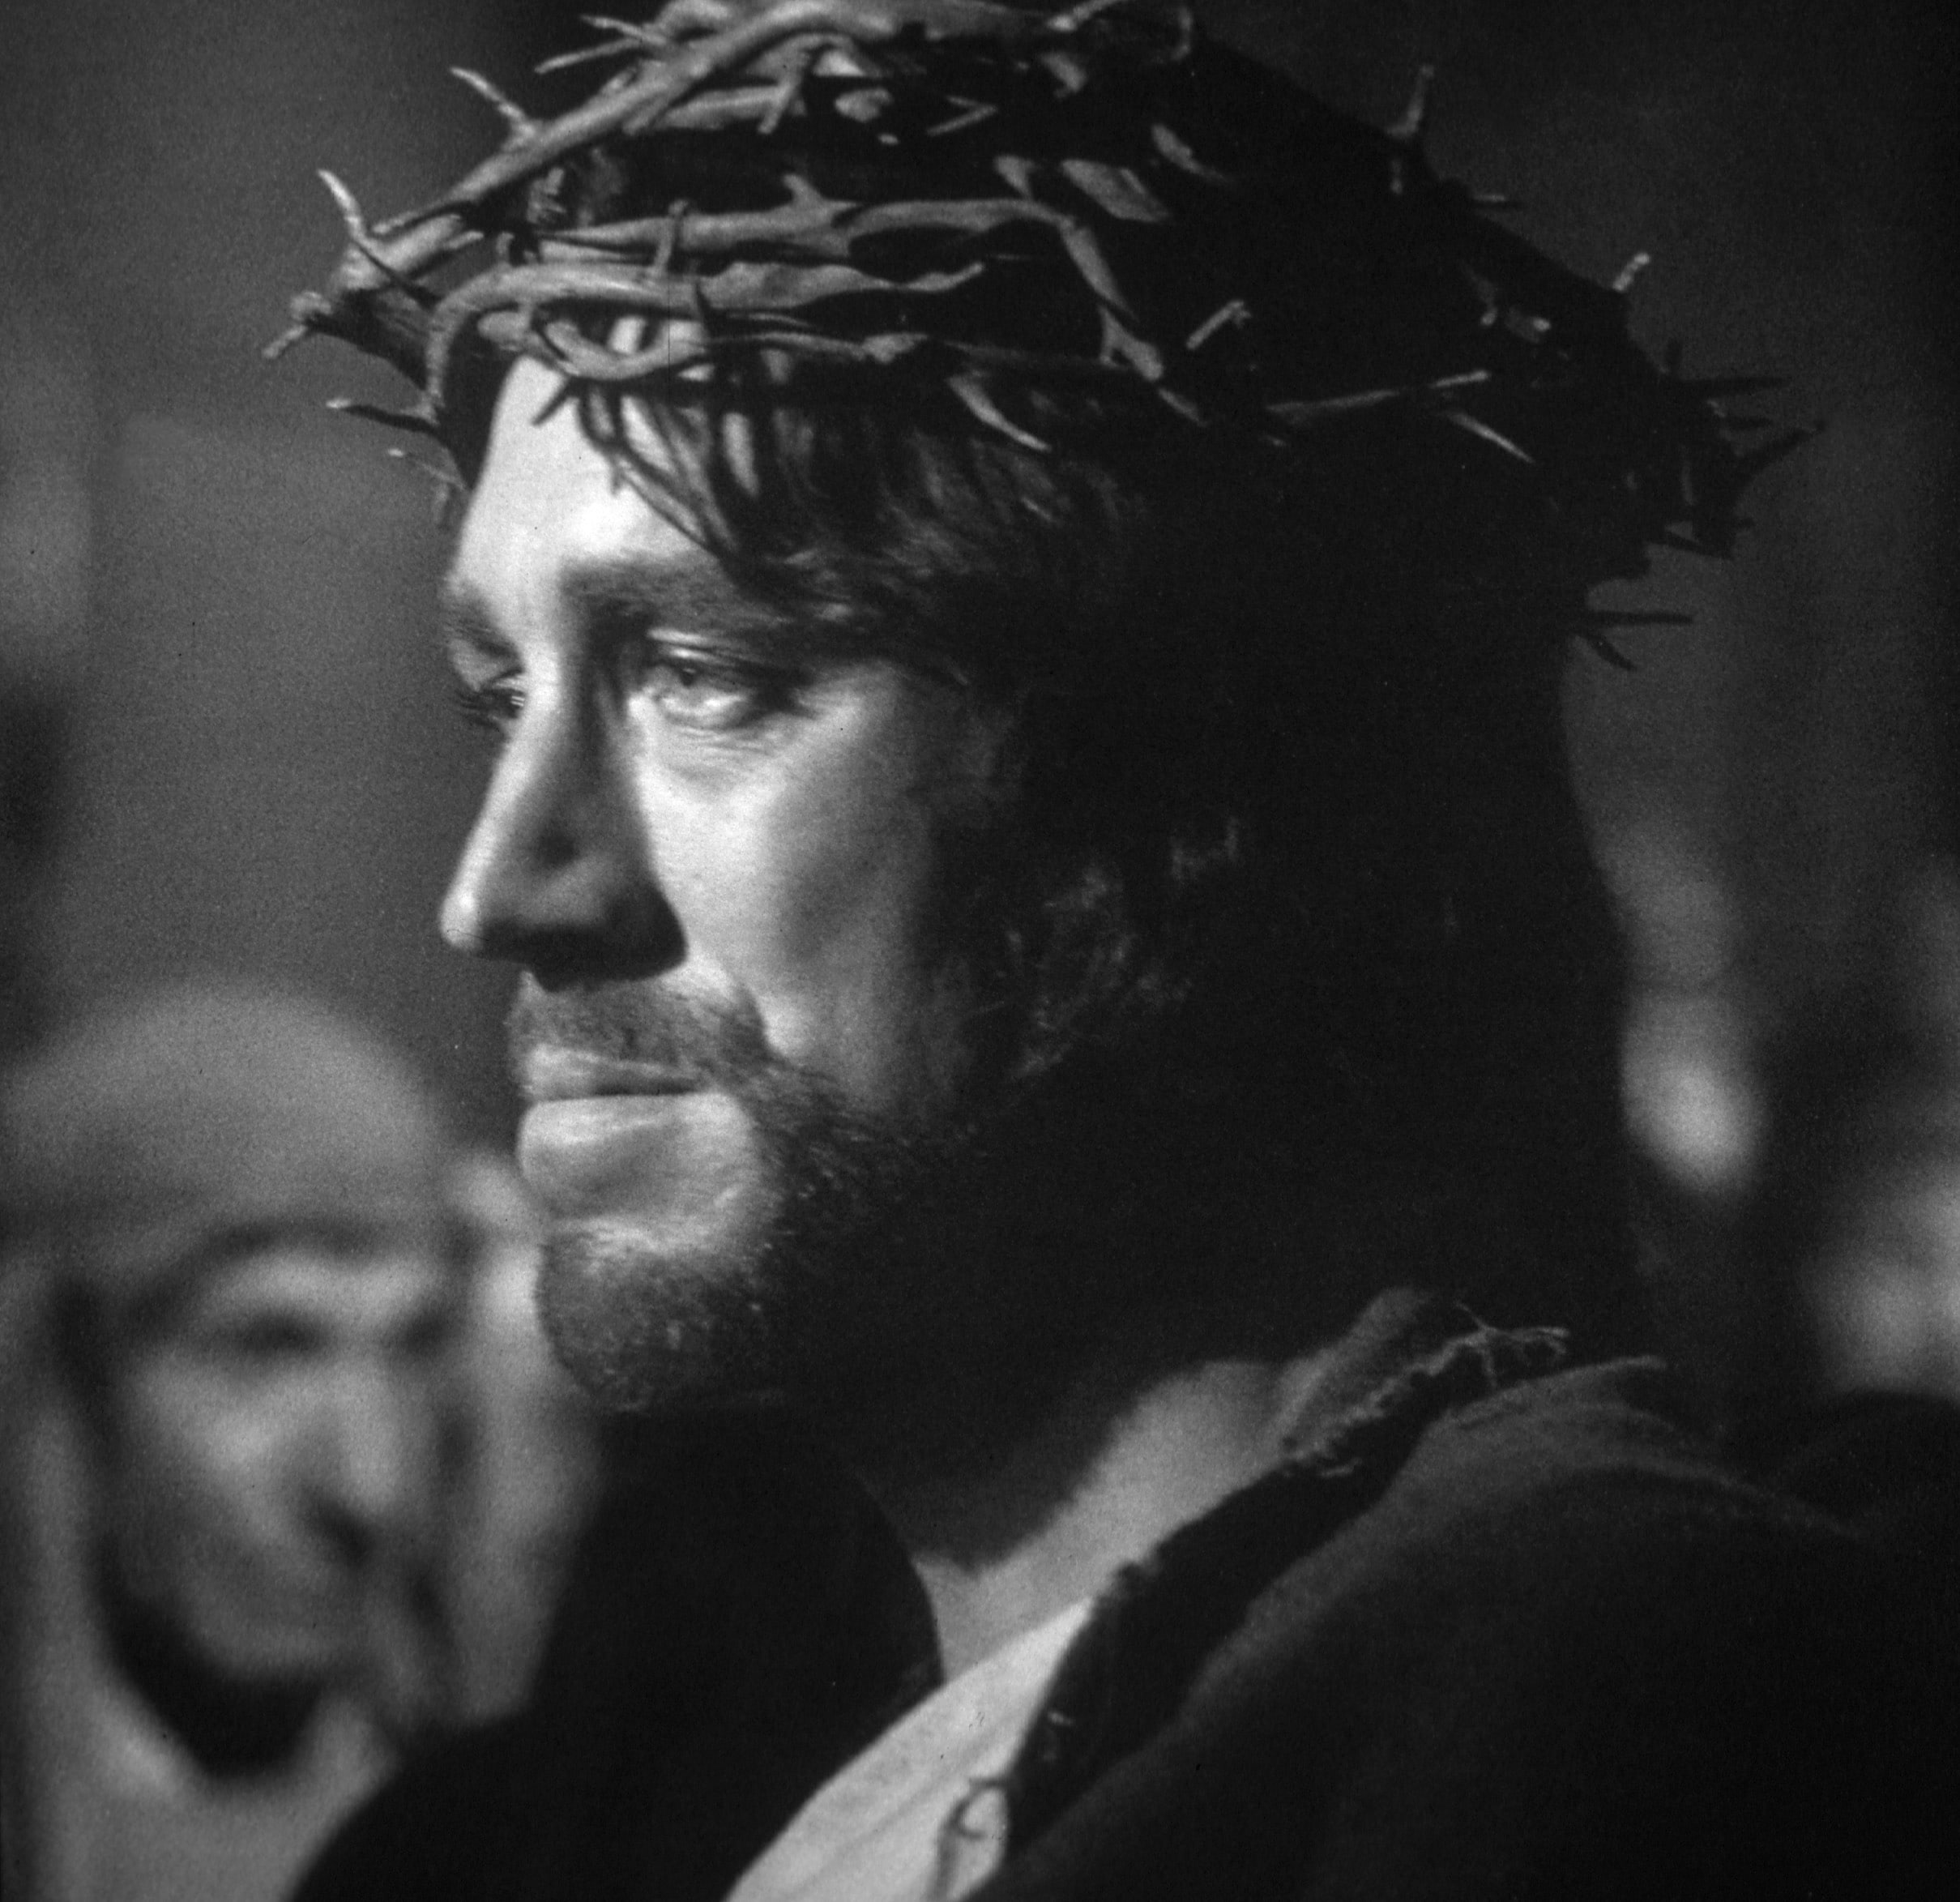 La più grande storia mai raccontata, 1965. Von Sydow interpreta Gesù Cristo